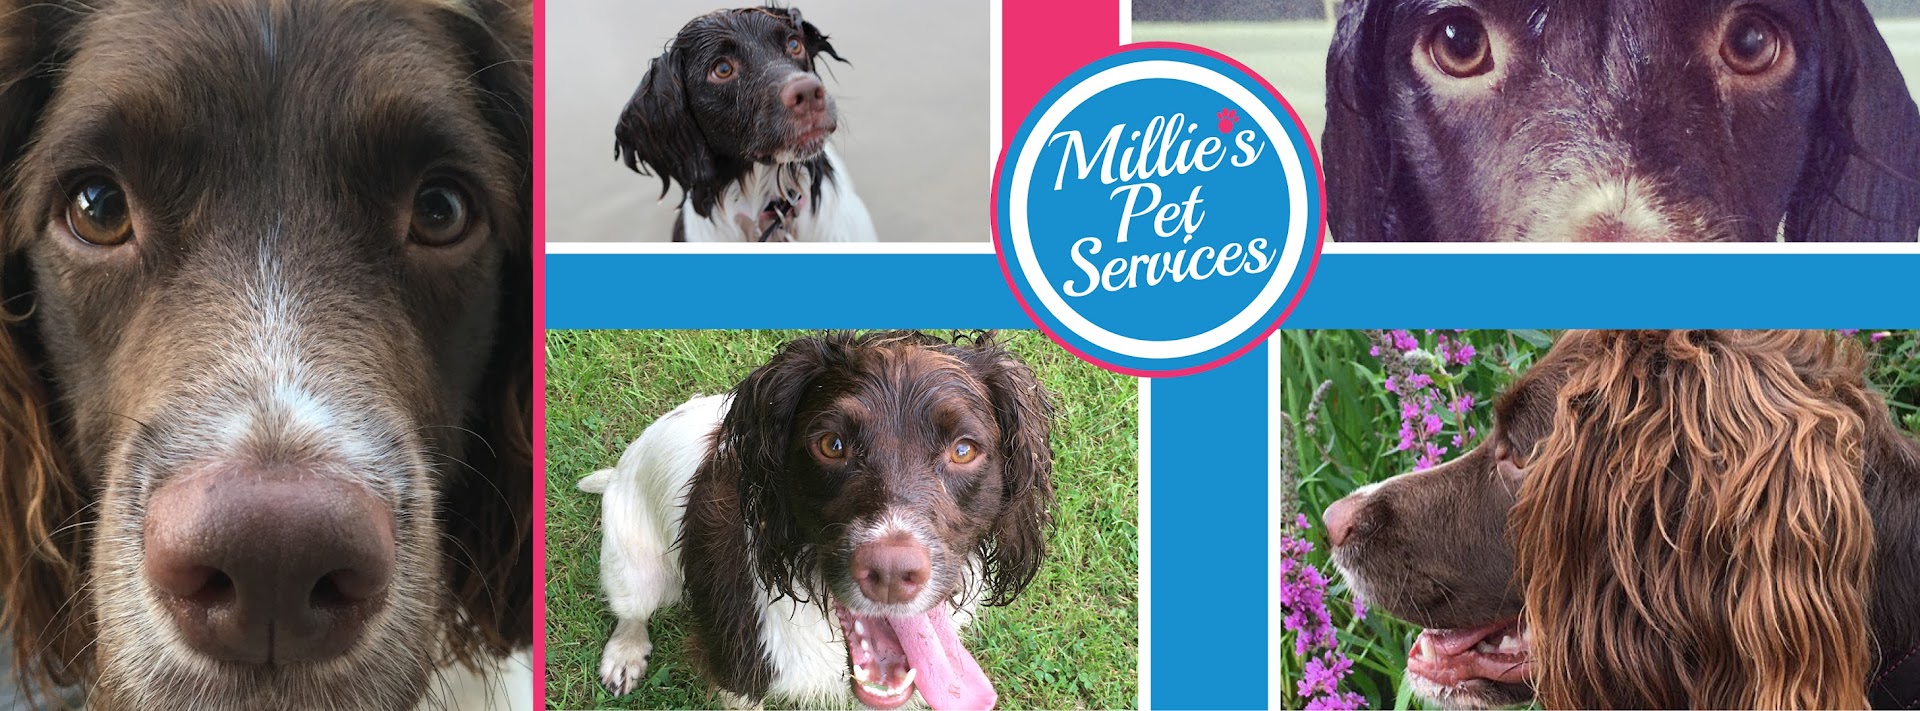 Millie's Pet Services